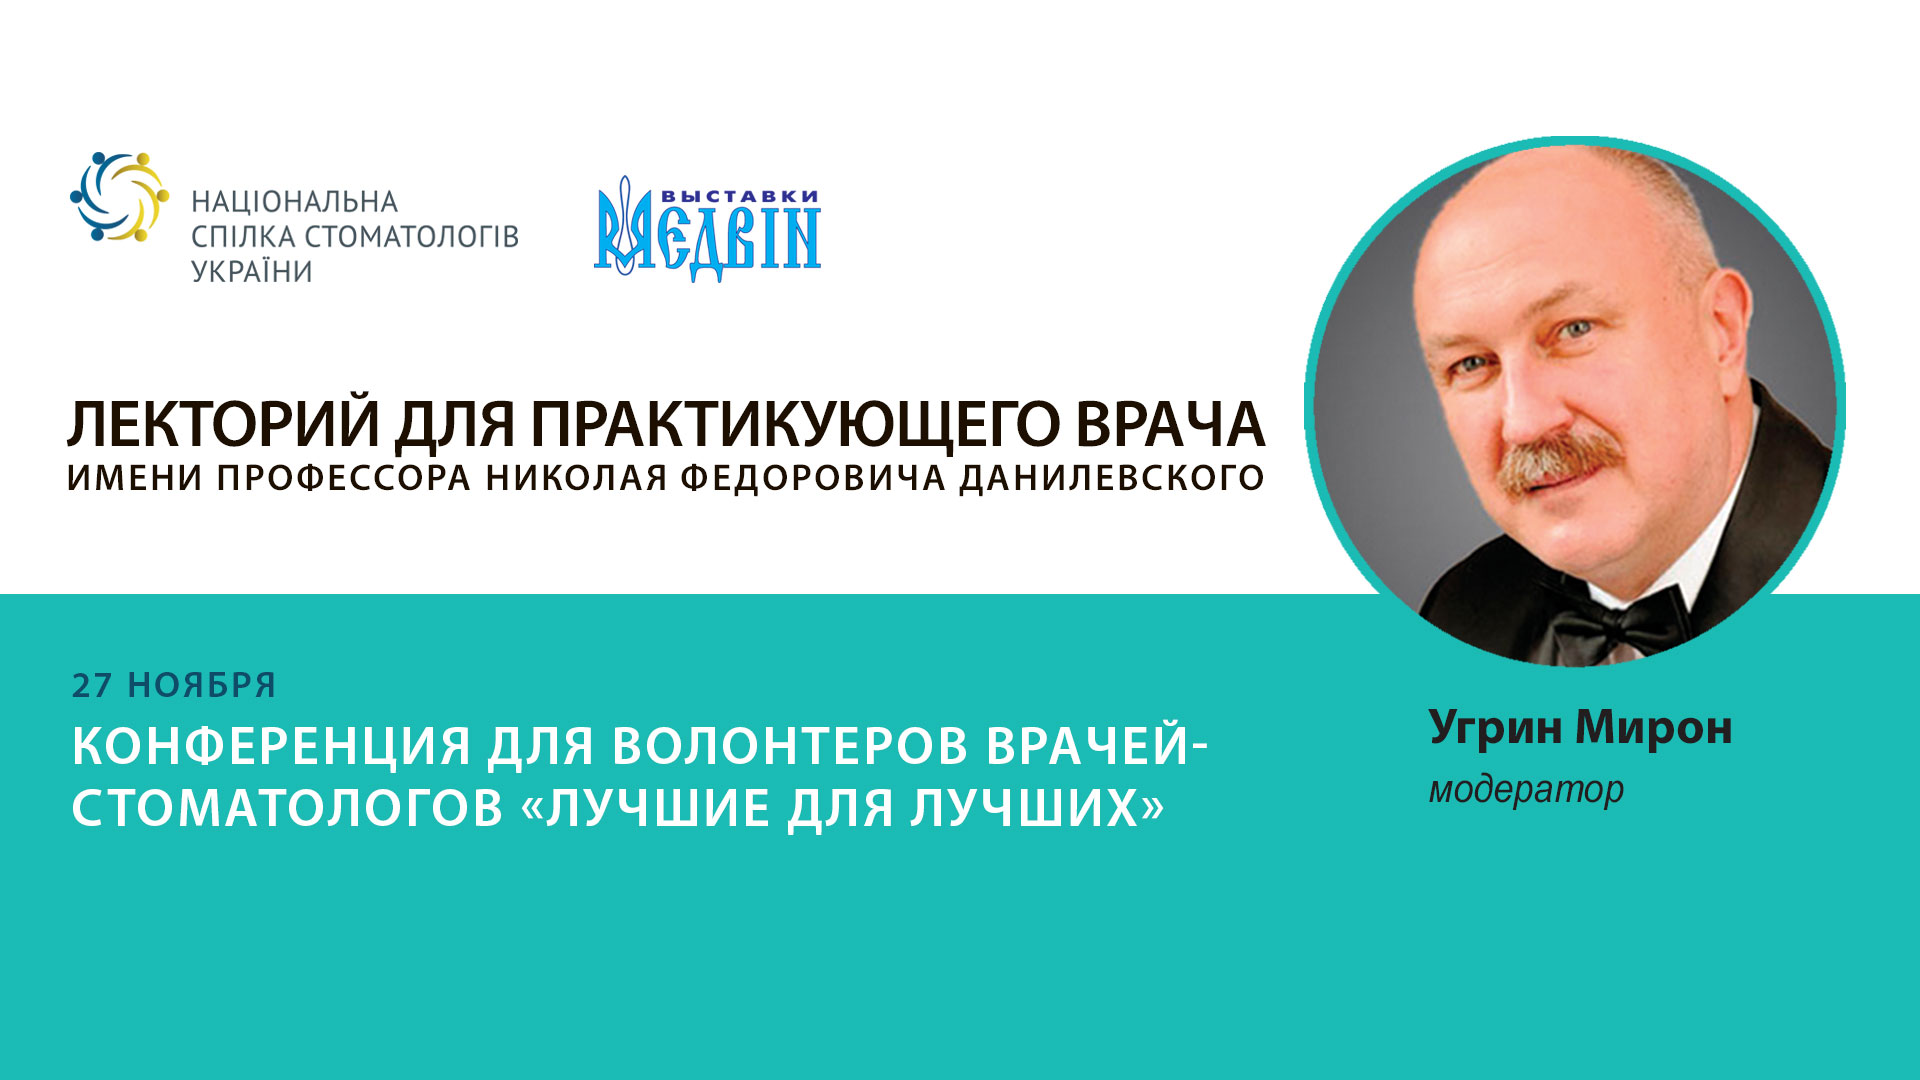 Мирон Угрин, президент Национальной спилки стоматологов Украины